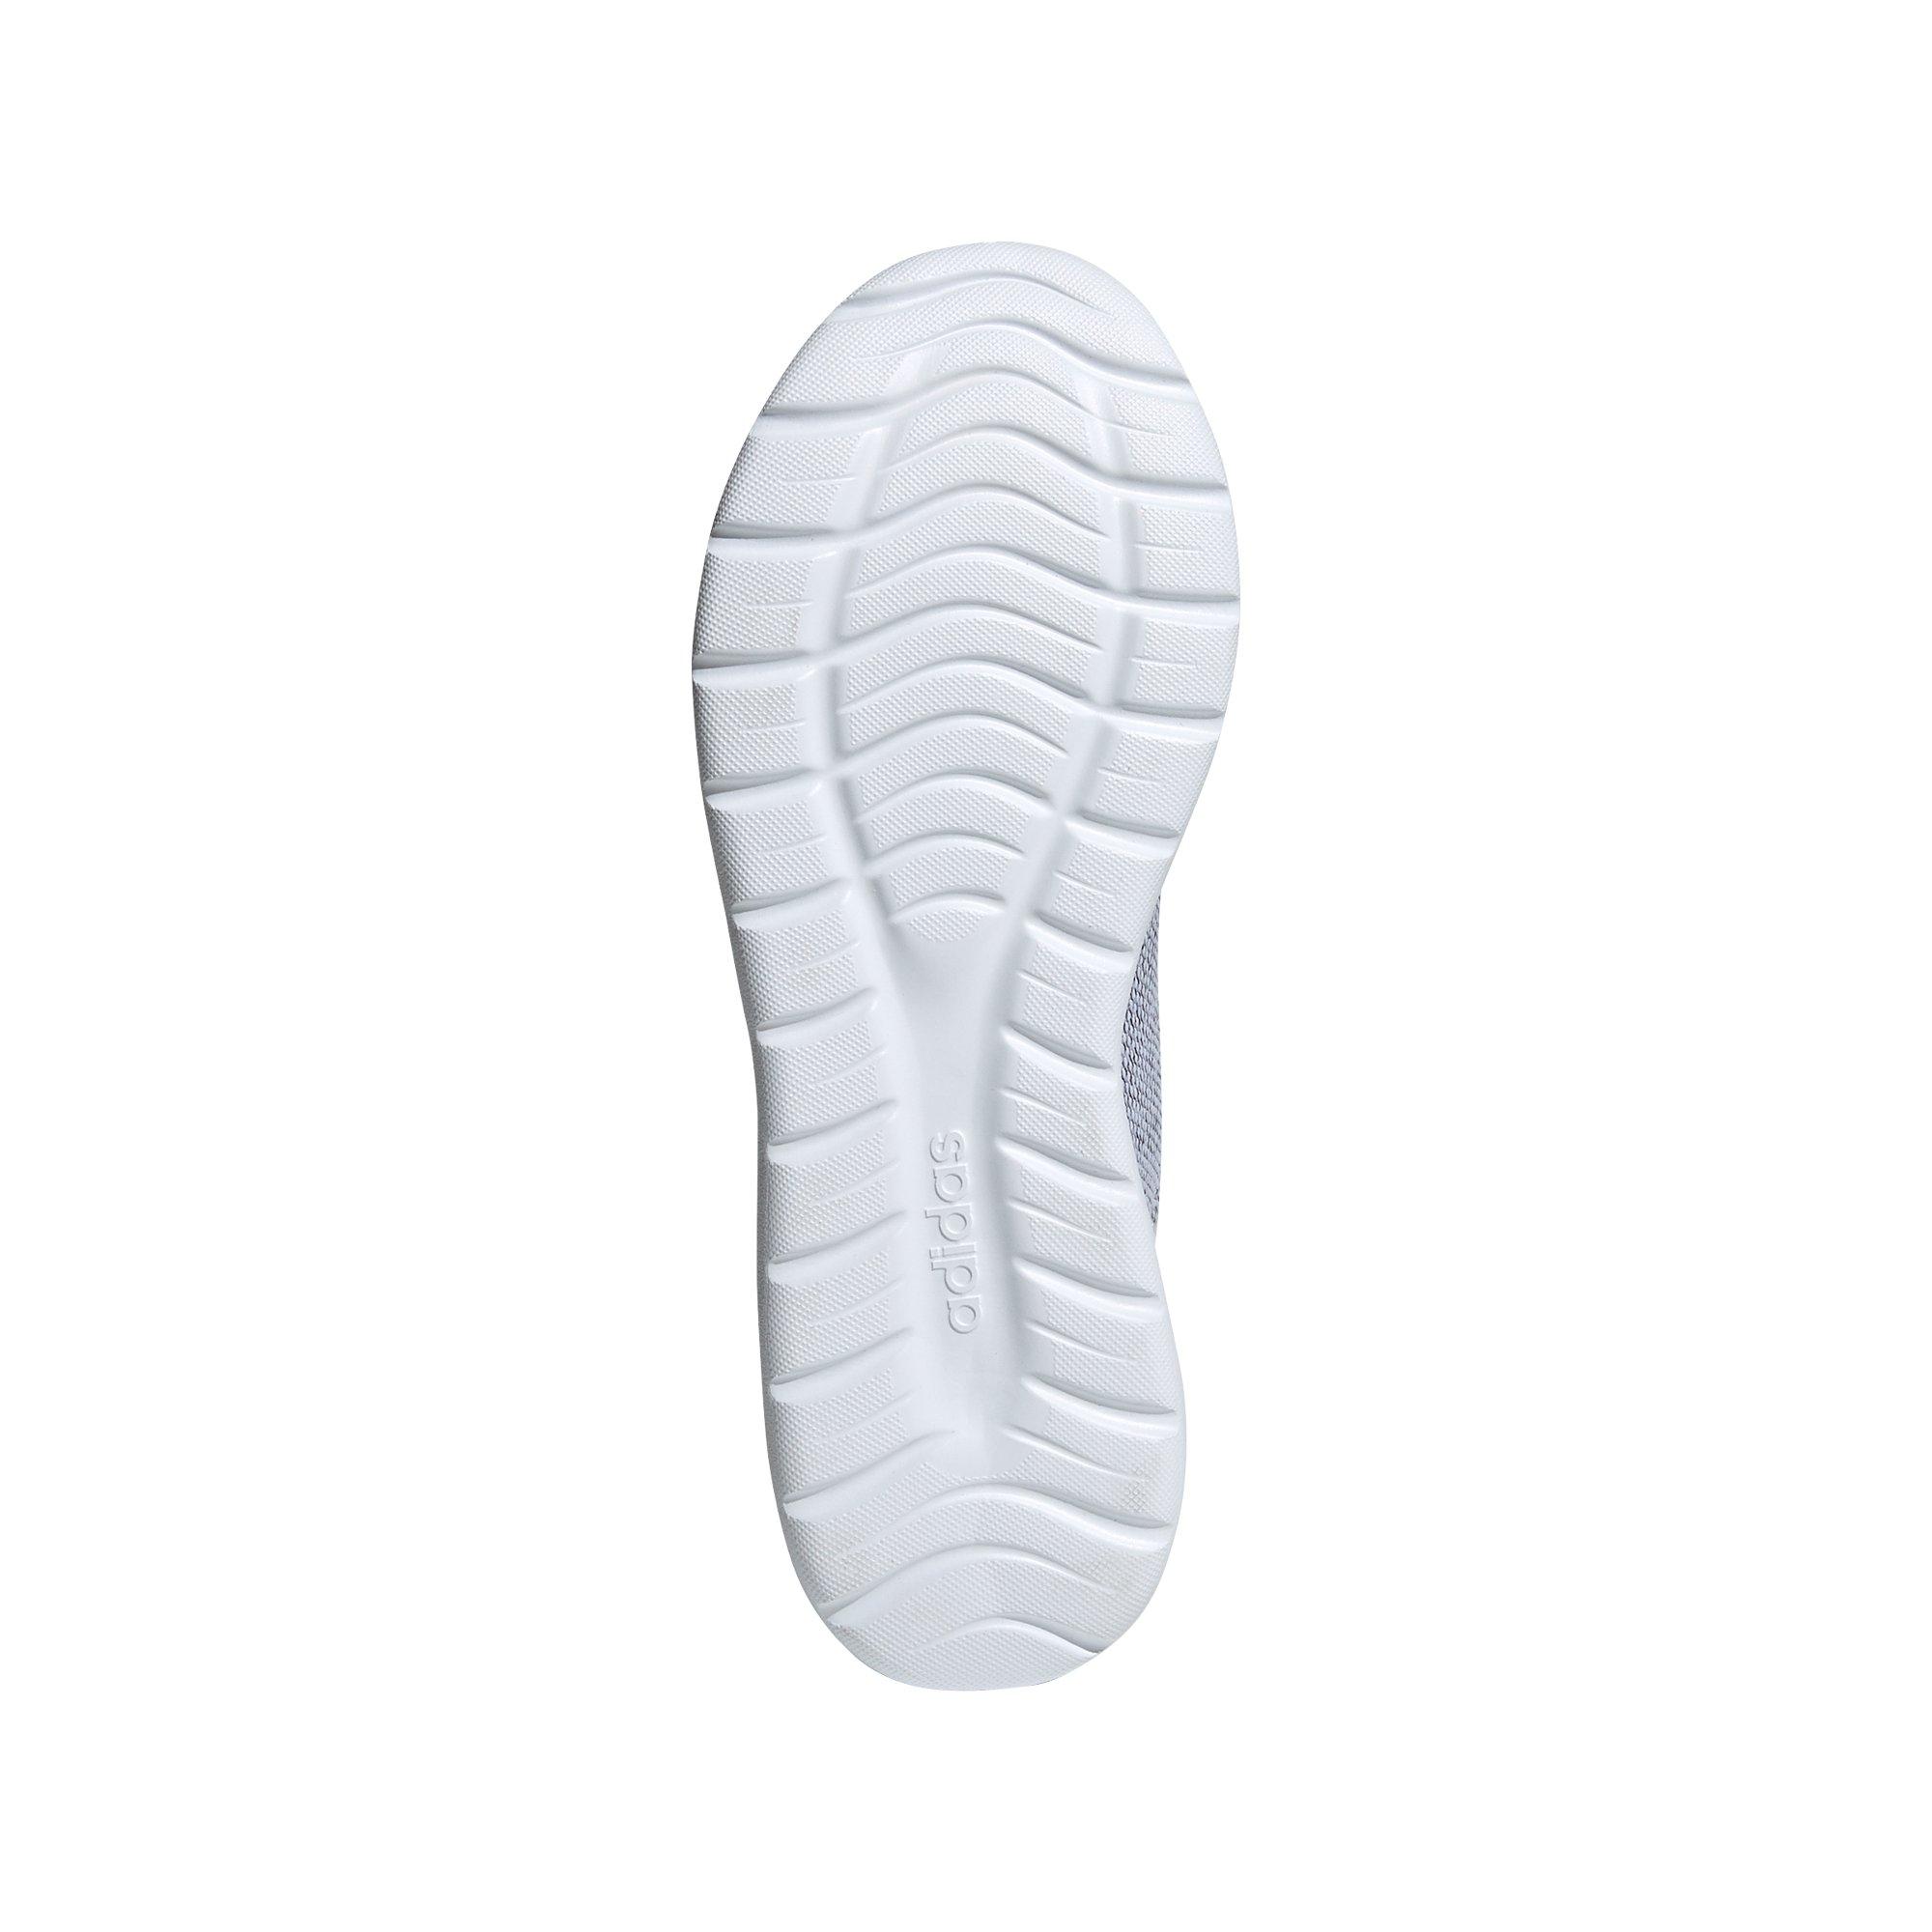 Adidas Basketball CloudFoam LVL 029002 11222 Black/White/Pink Womens Sz 7